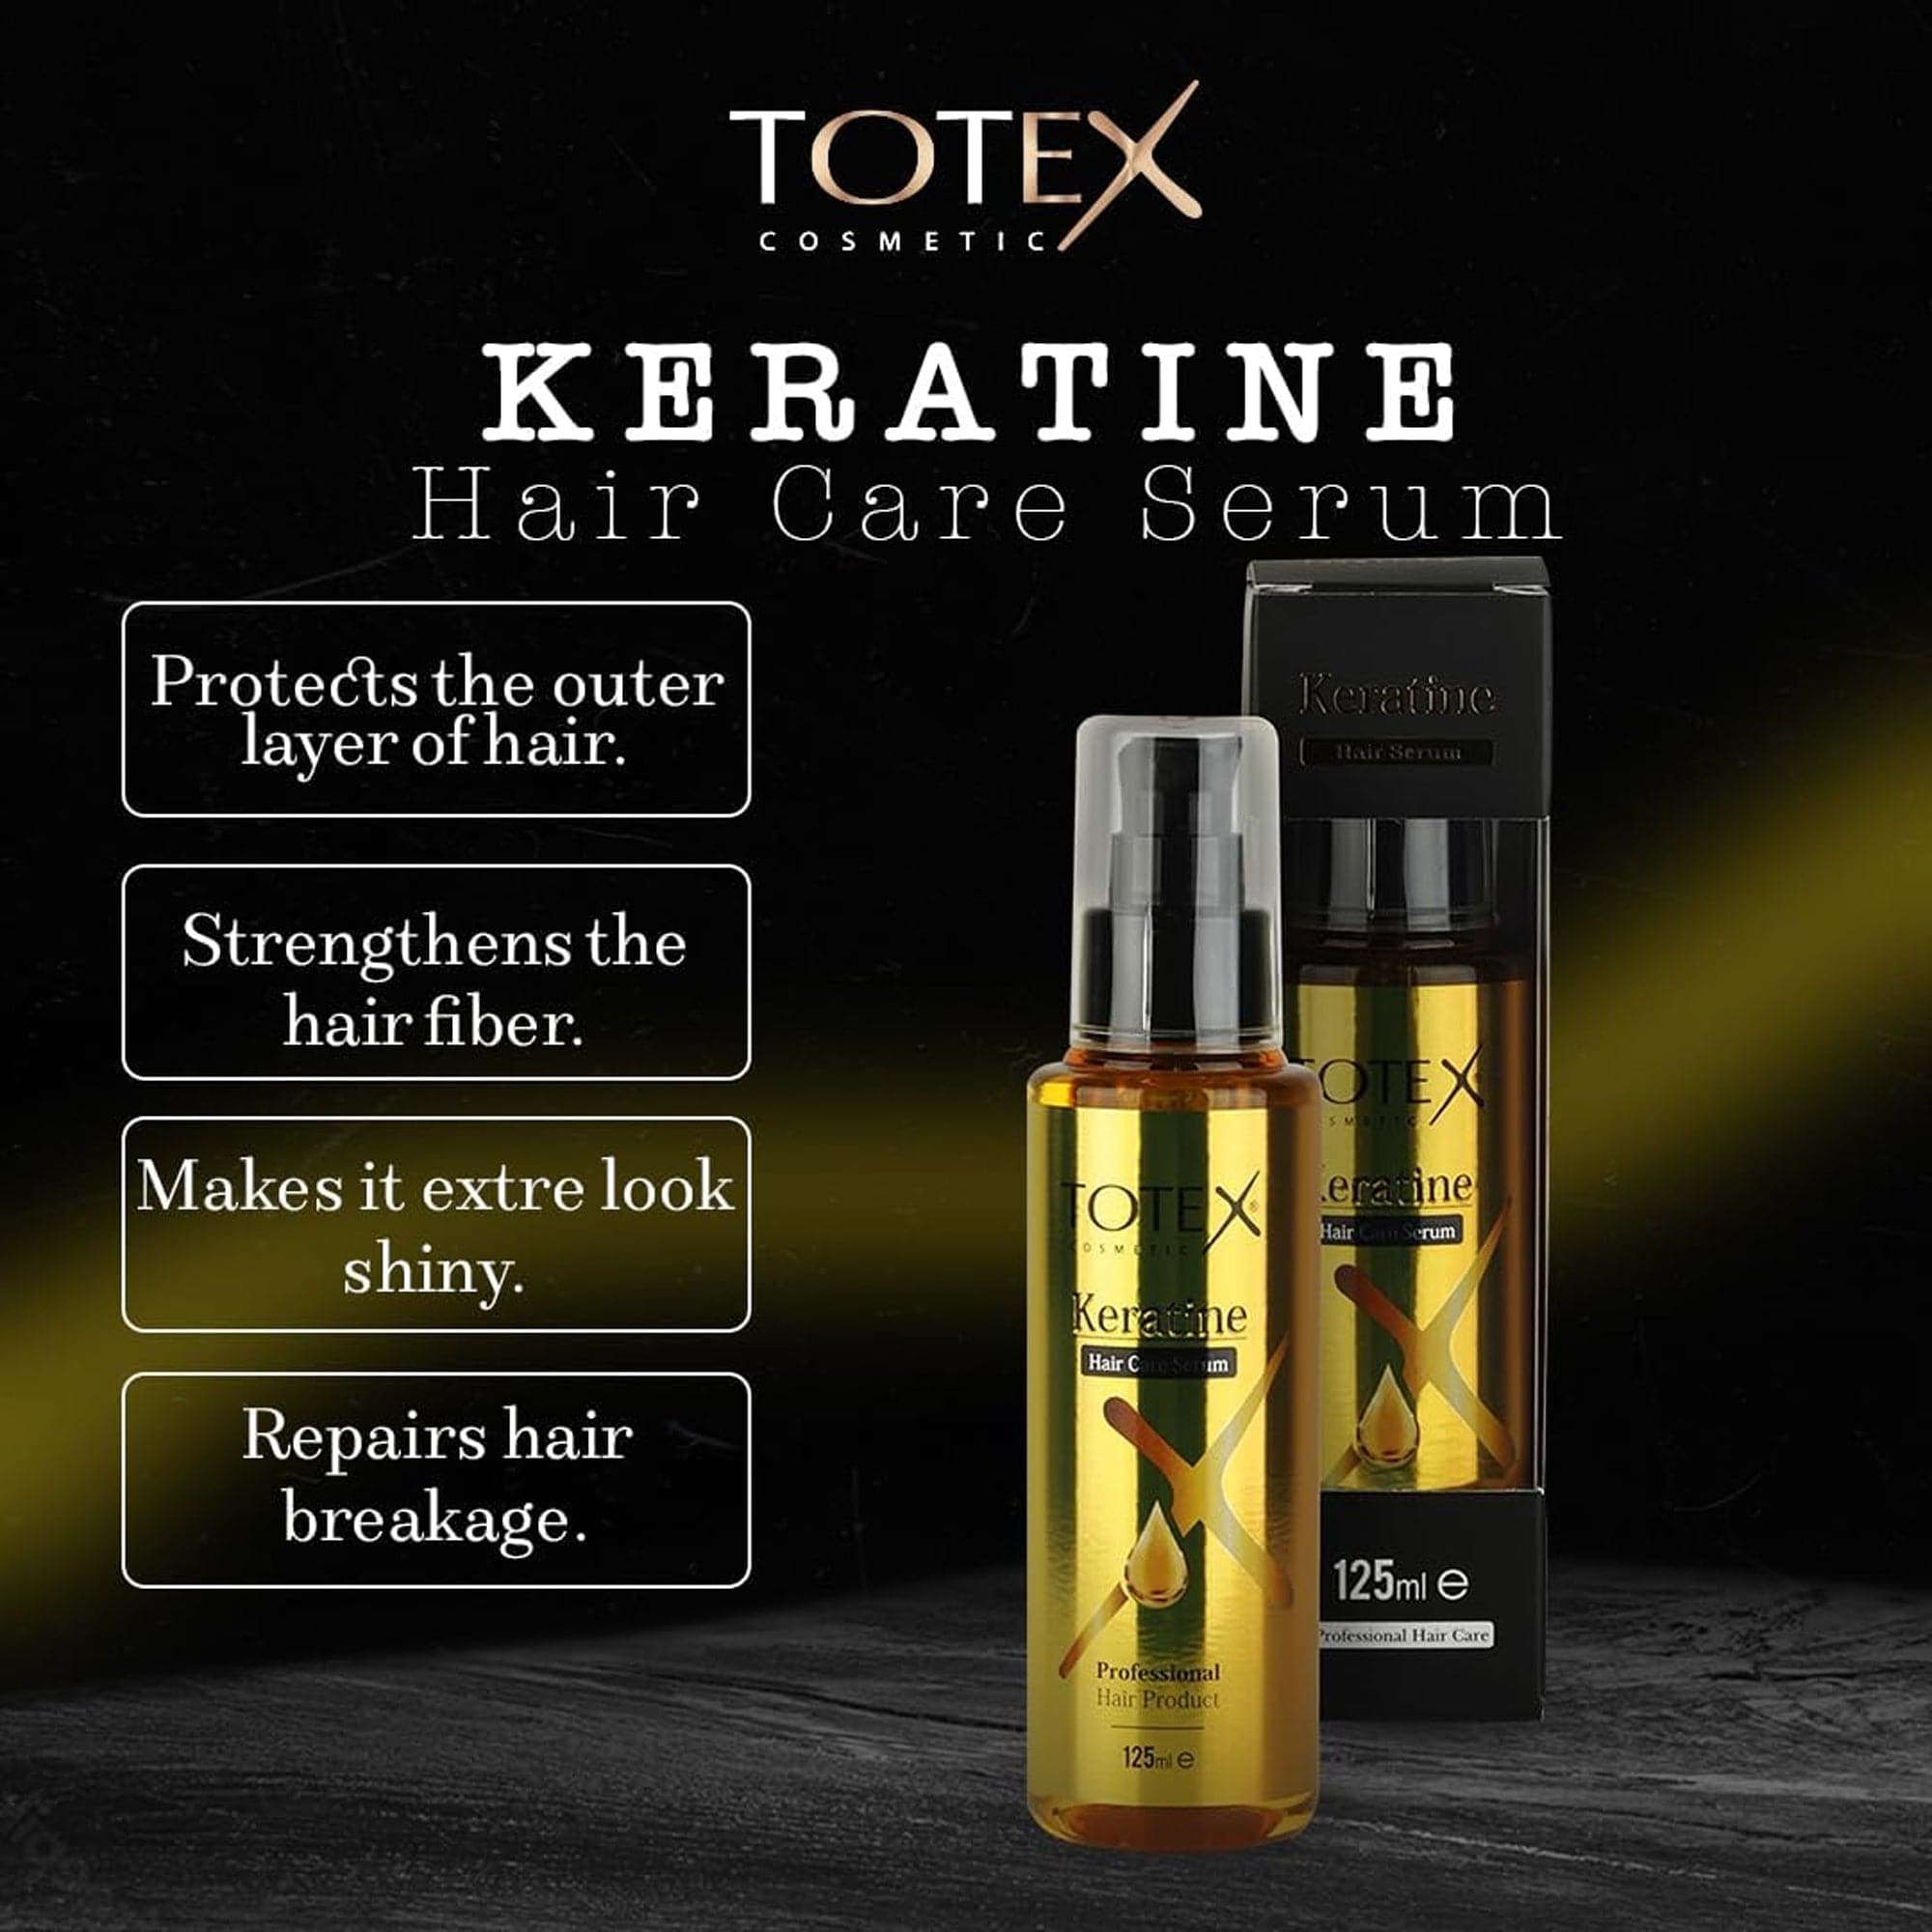 Totex - Hair Care Serum Keratin 125ml